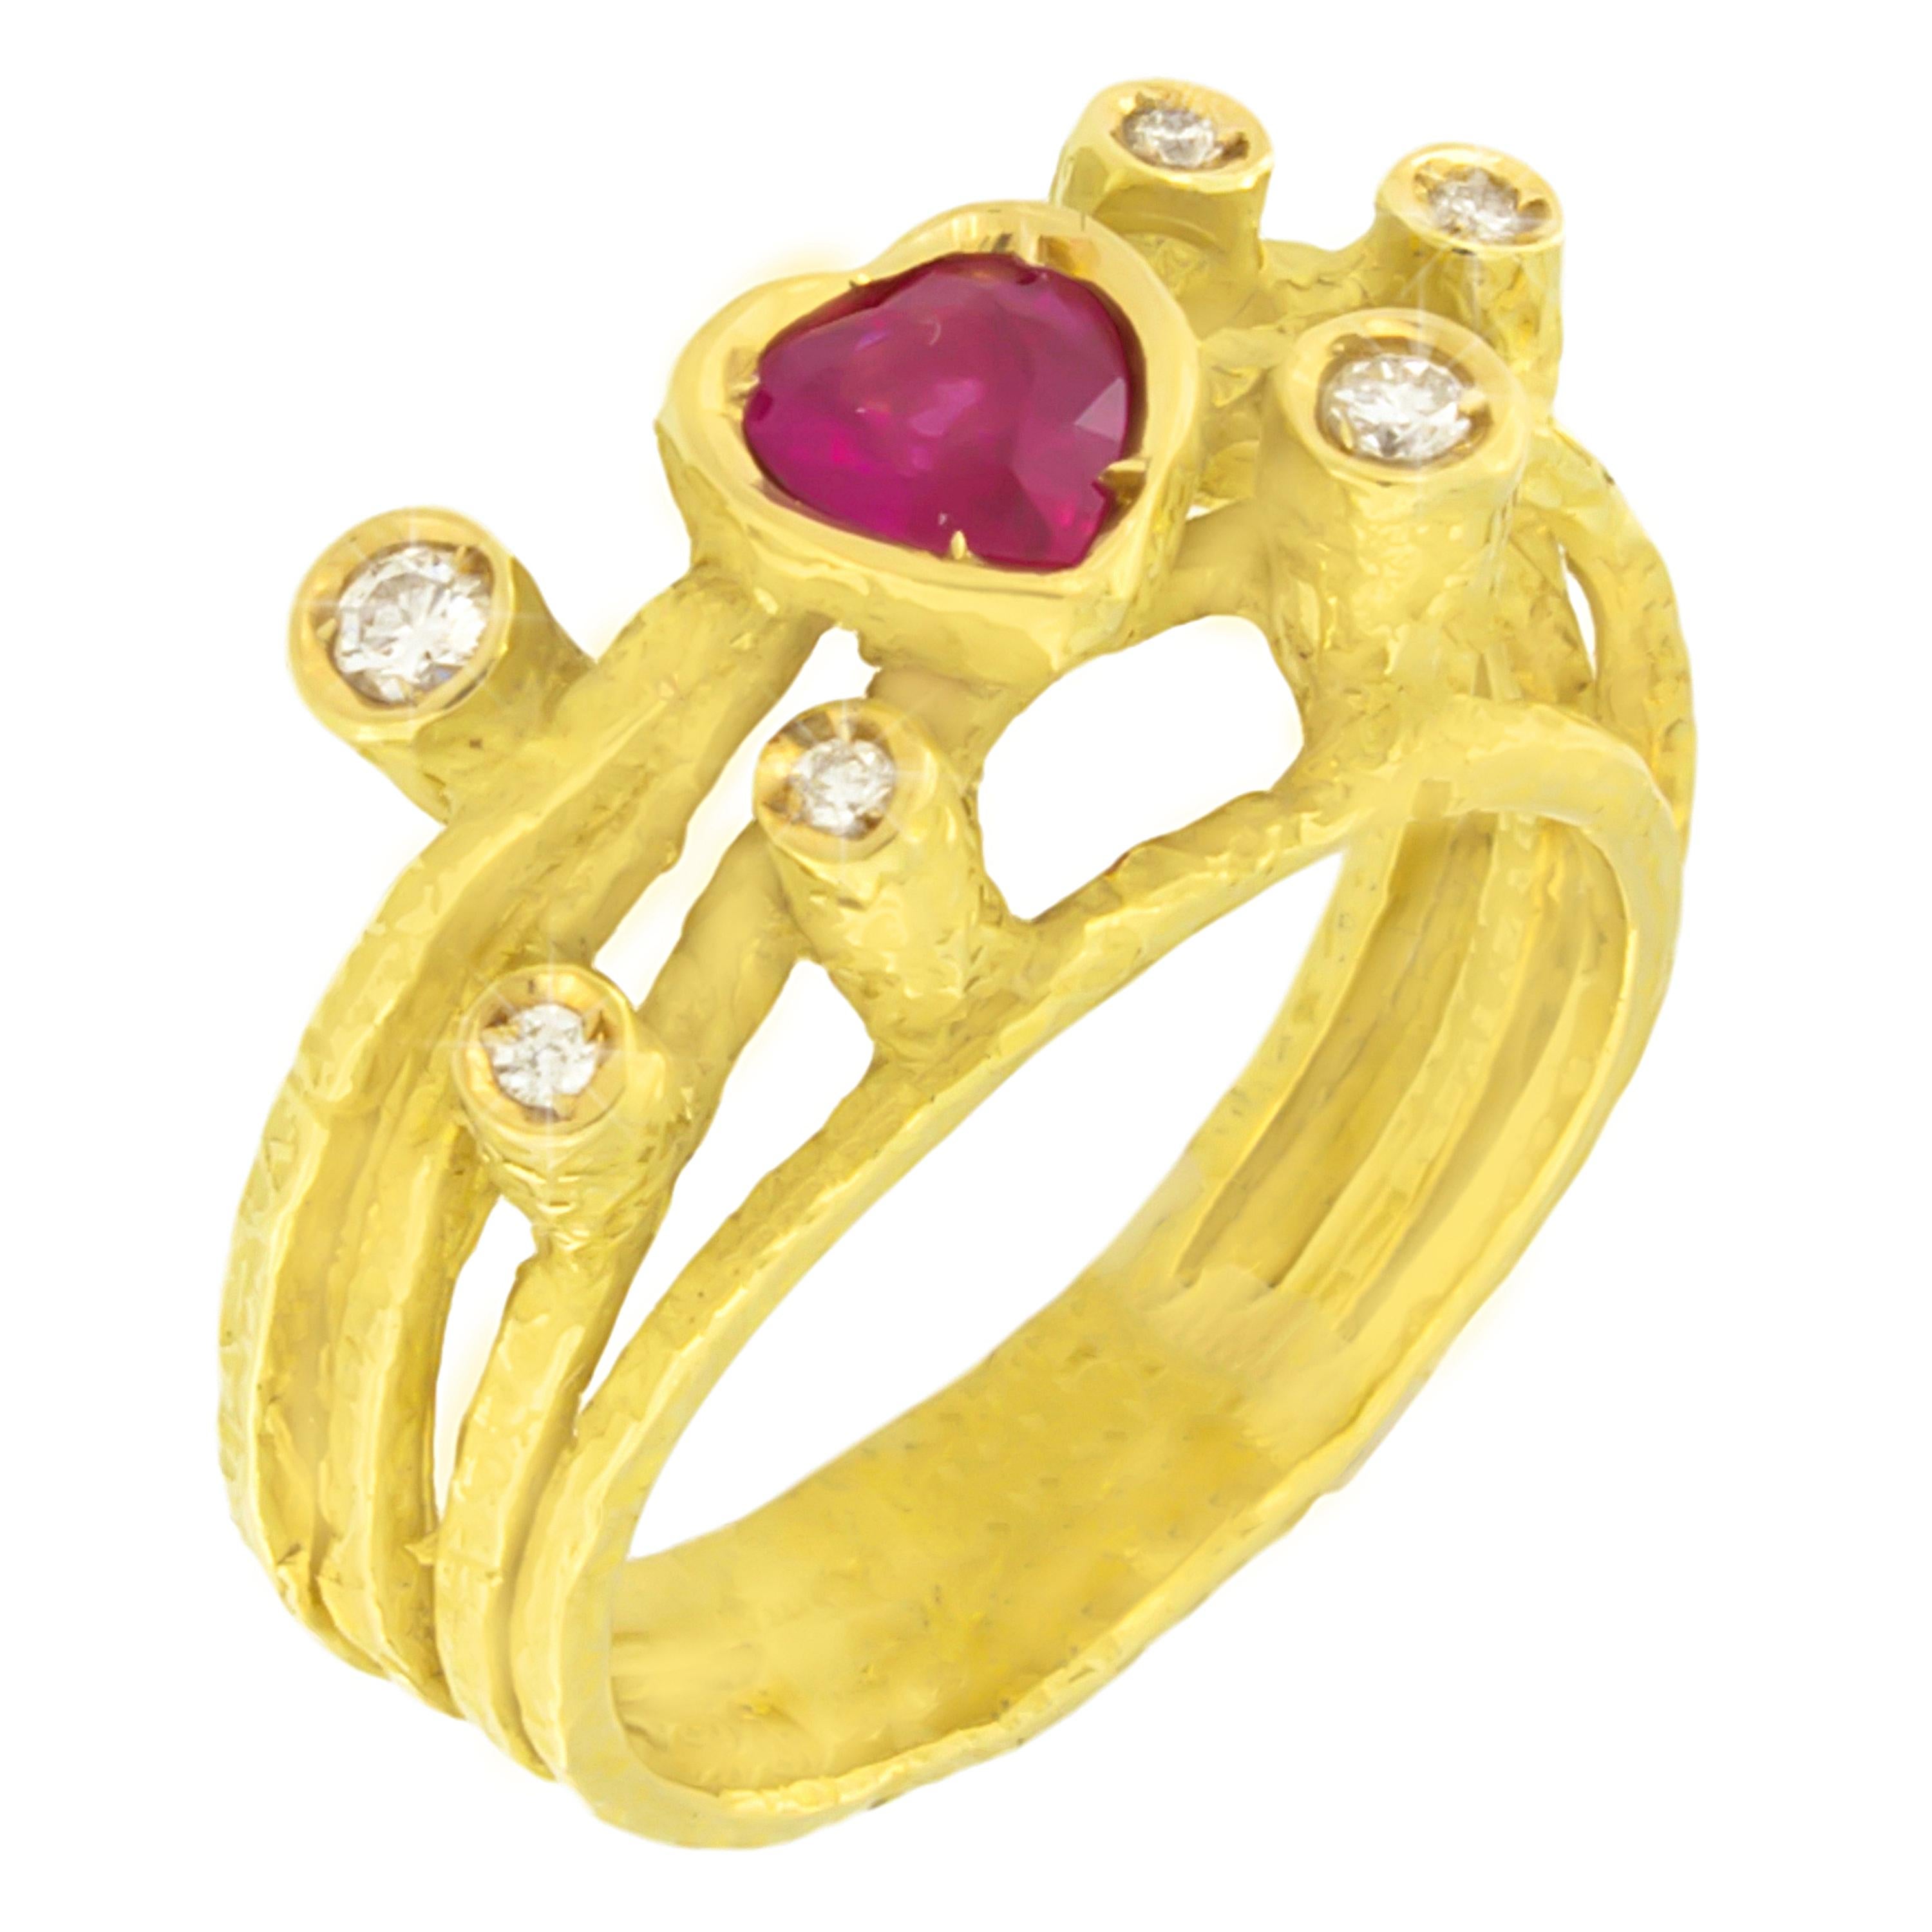 Lovely Heart Ruby and Diamonds Satin Yellow Gold Cocktail Ring, de la collection Universe de Sacchi, réalisée à la main selon la technique du moulage à la cire perdue.

Le moulage à la cire perdue, l'une des plus anciennes techniques de création de